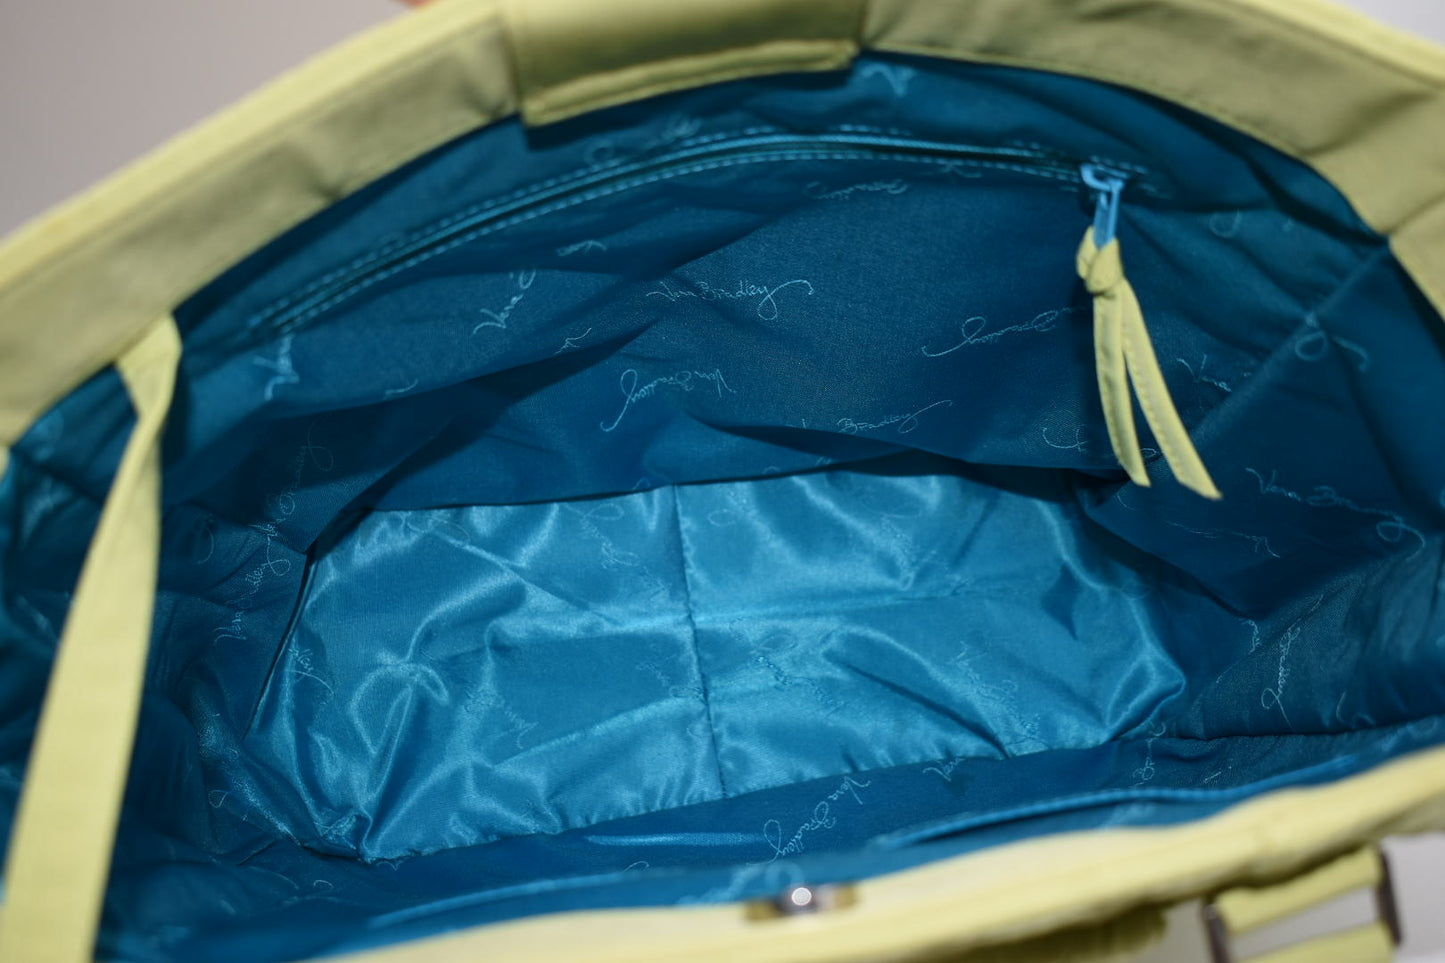 Vera Bradley Microfiber Turnlock Tote Bag in "Key Lime"